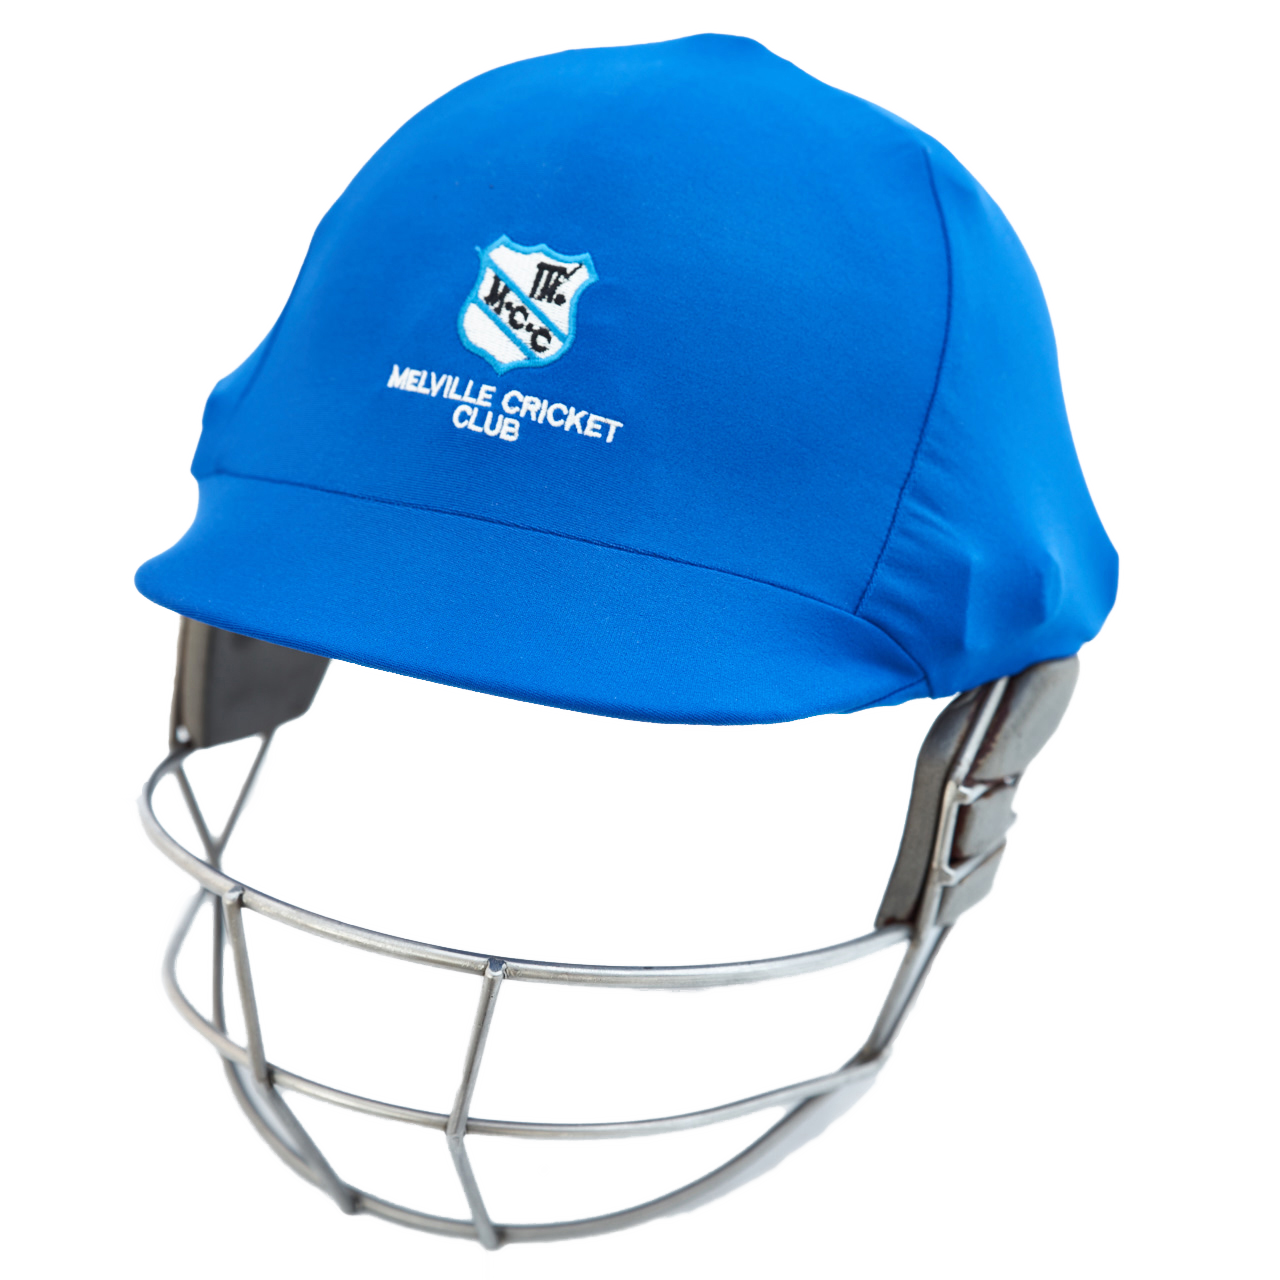 Cricket Helmet PNG Image Transparent